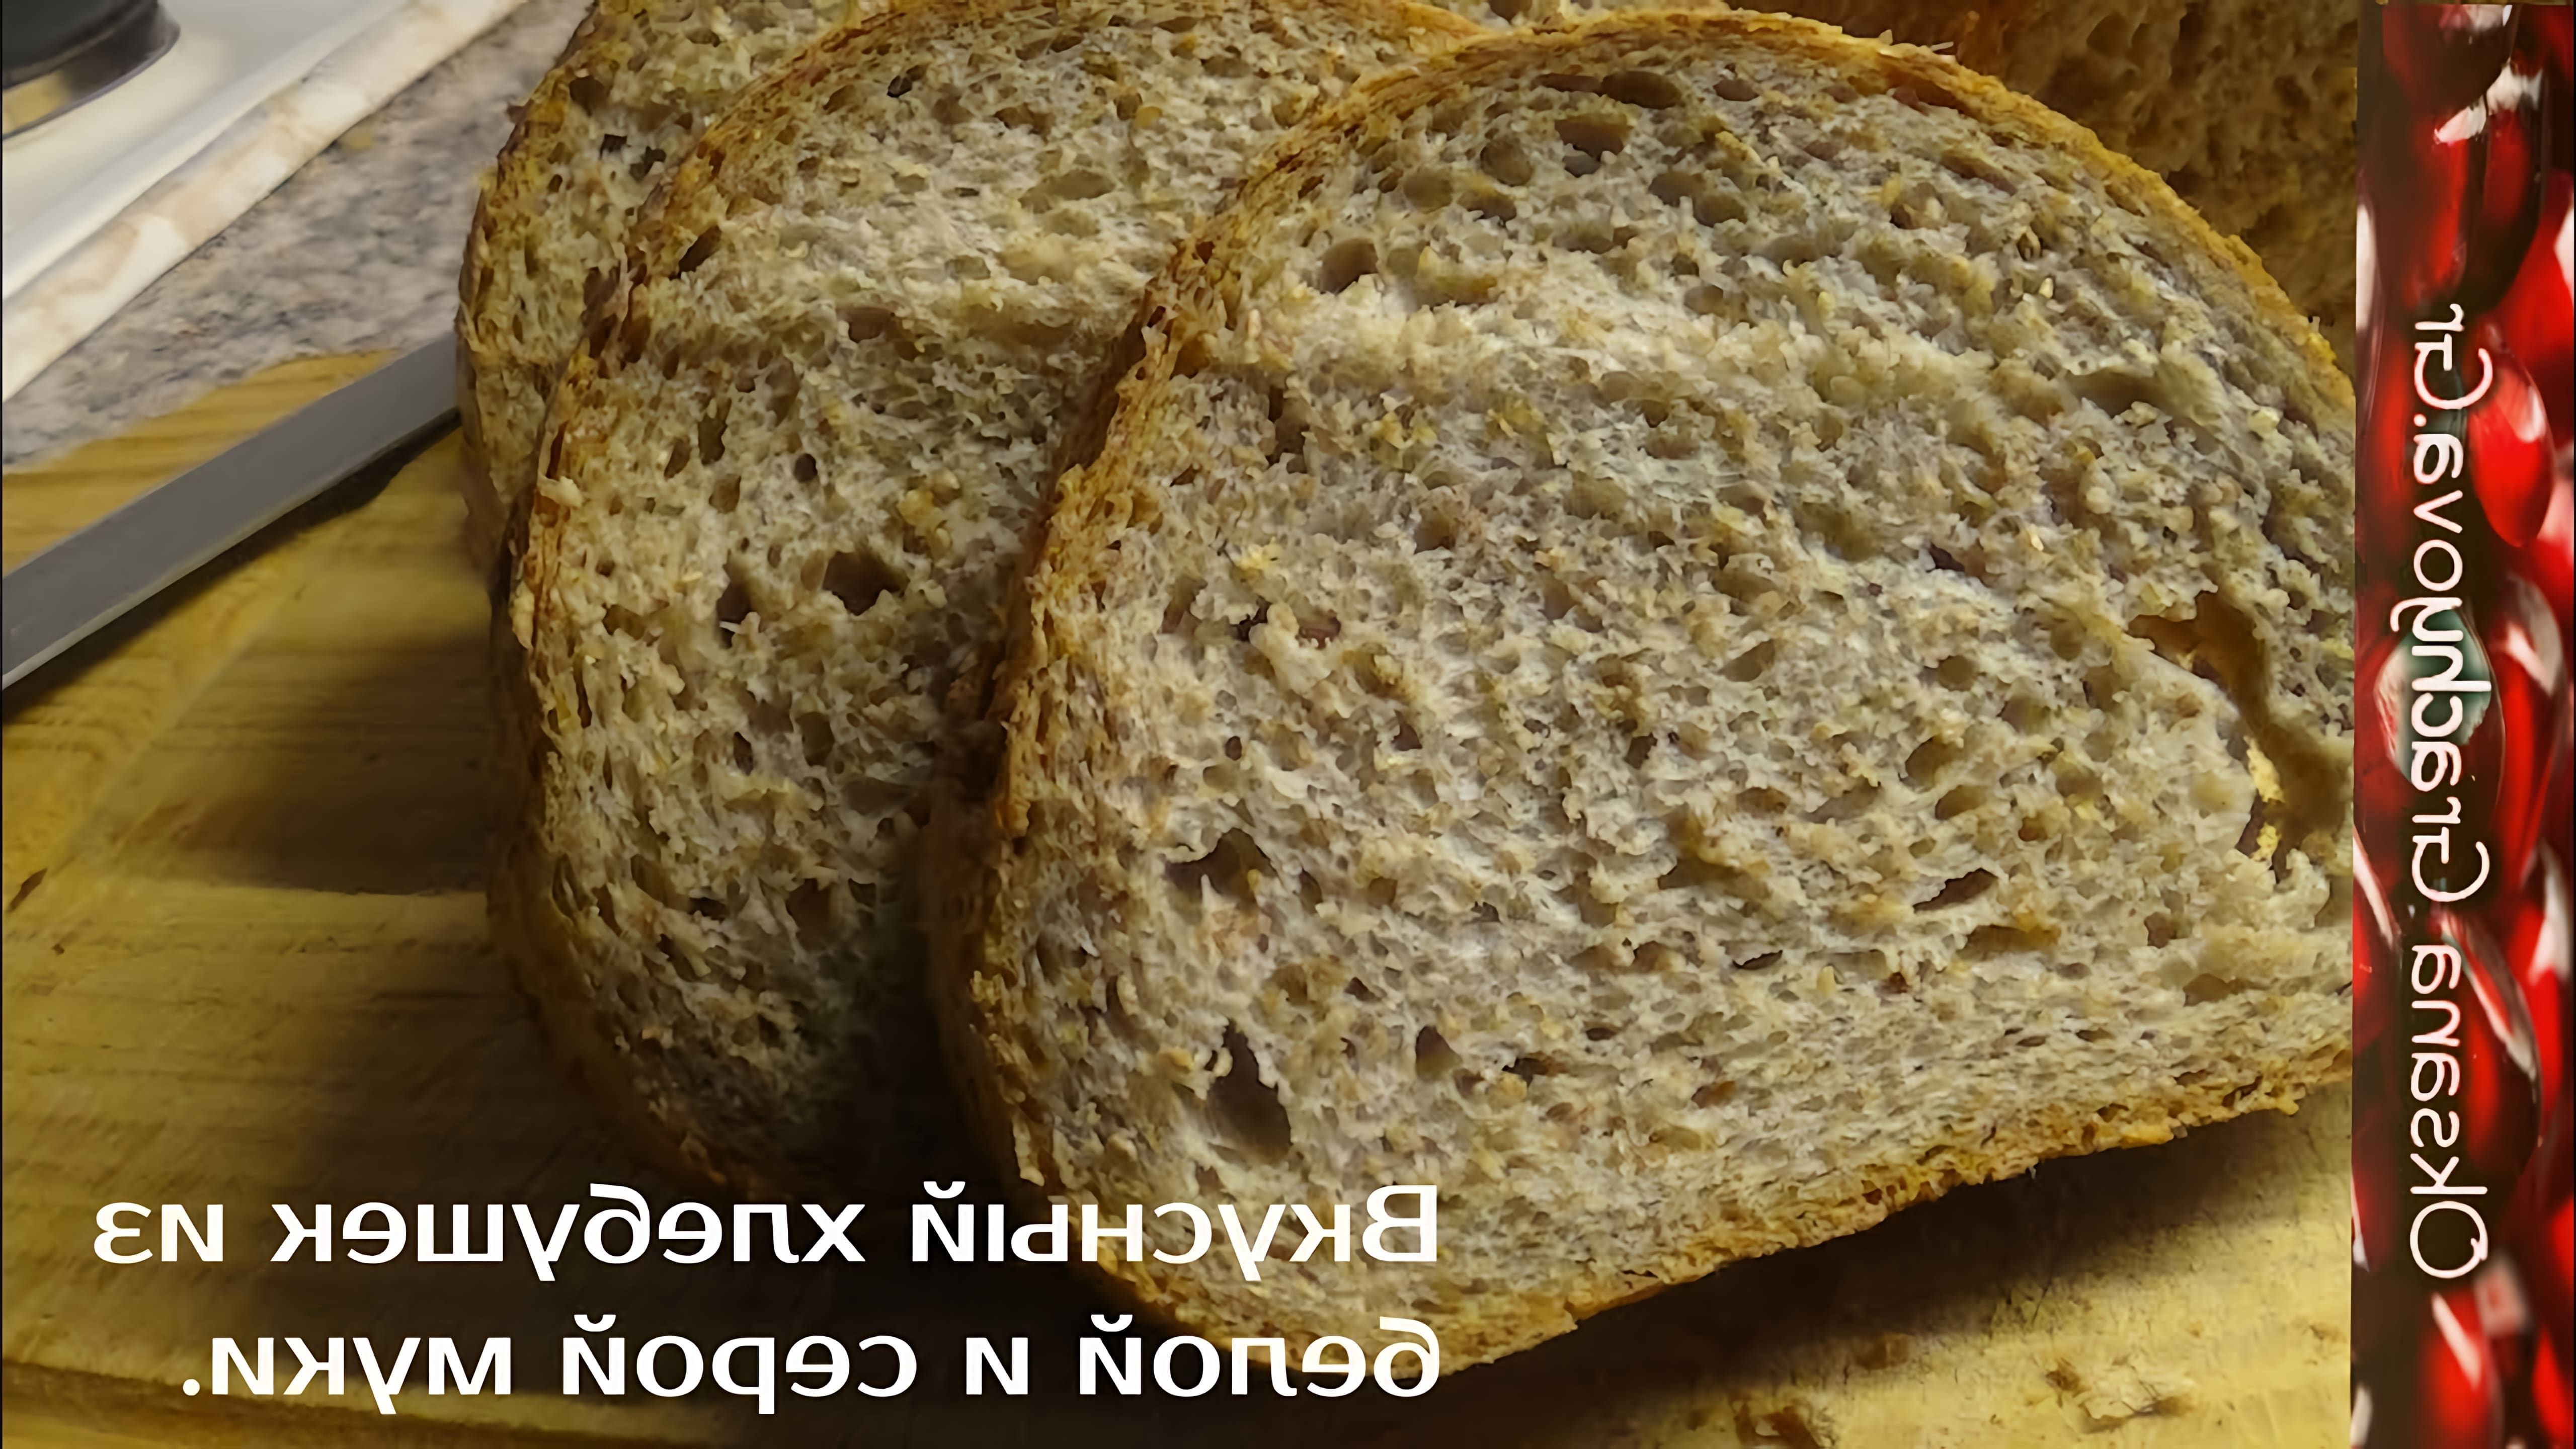 В этом видео-ролике показан процесс приготовления пышного серого хлеба из ржаной и белой муки